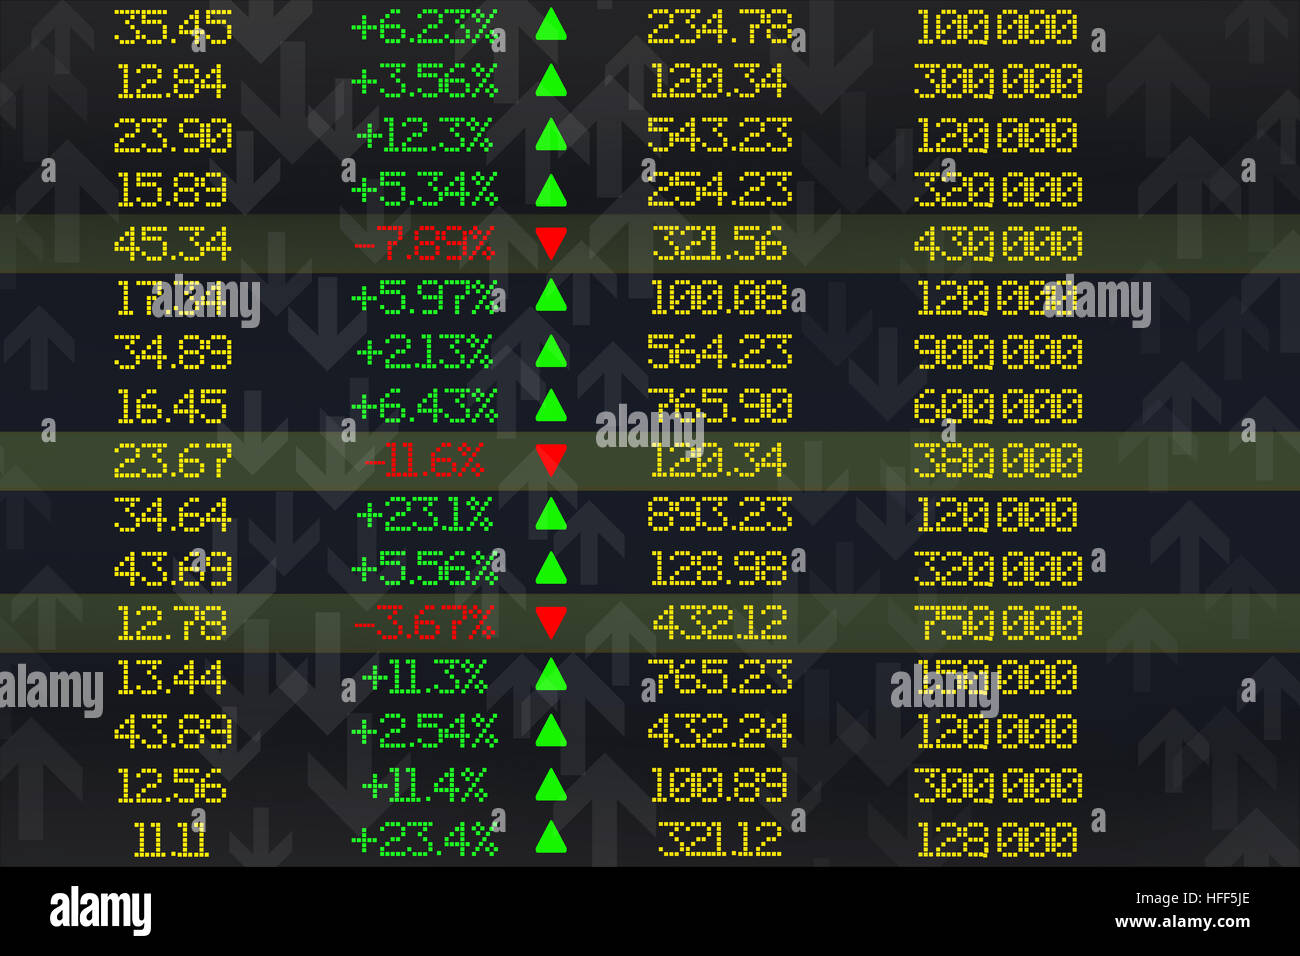 Stock exchange display panel Stock Photo